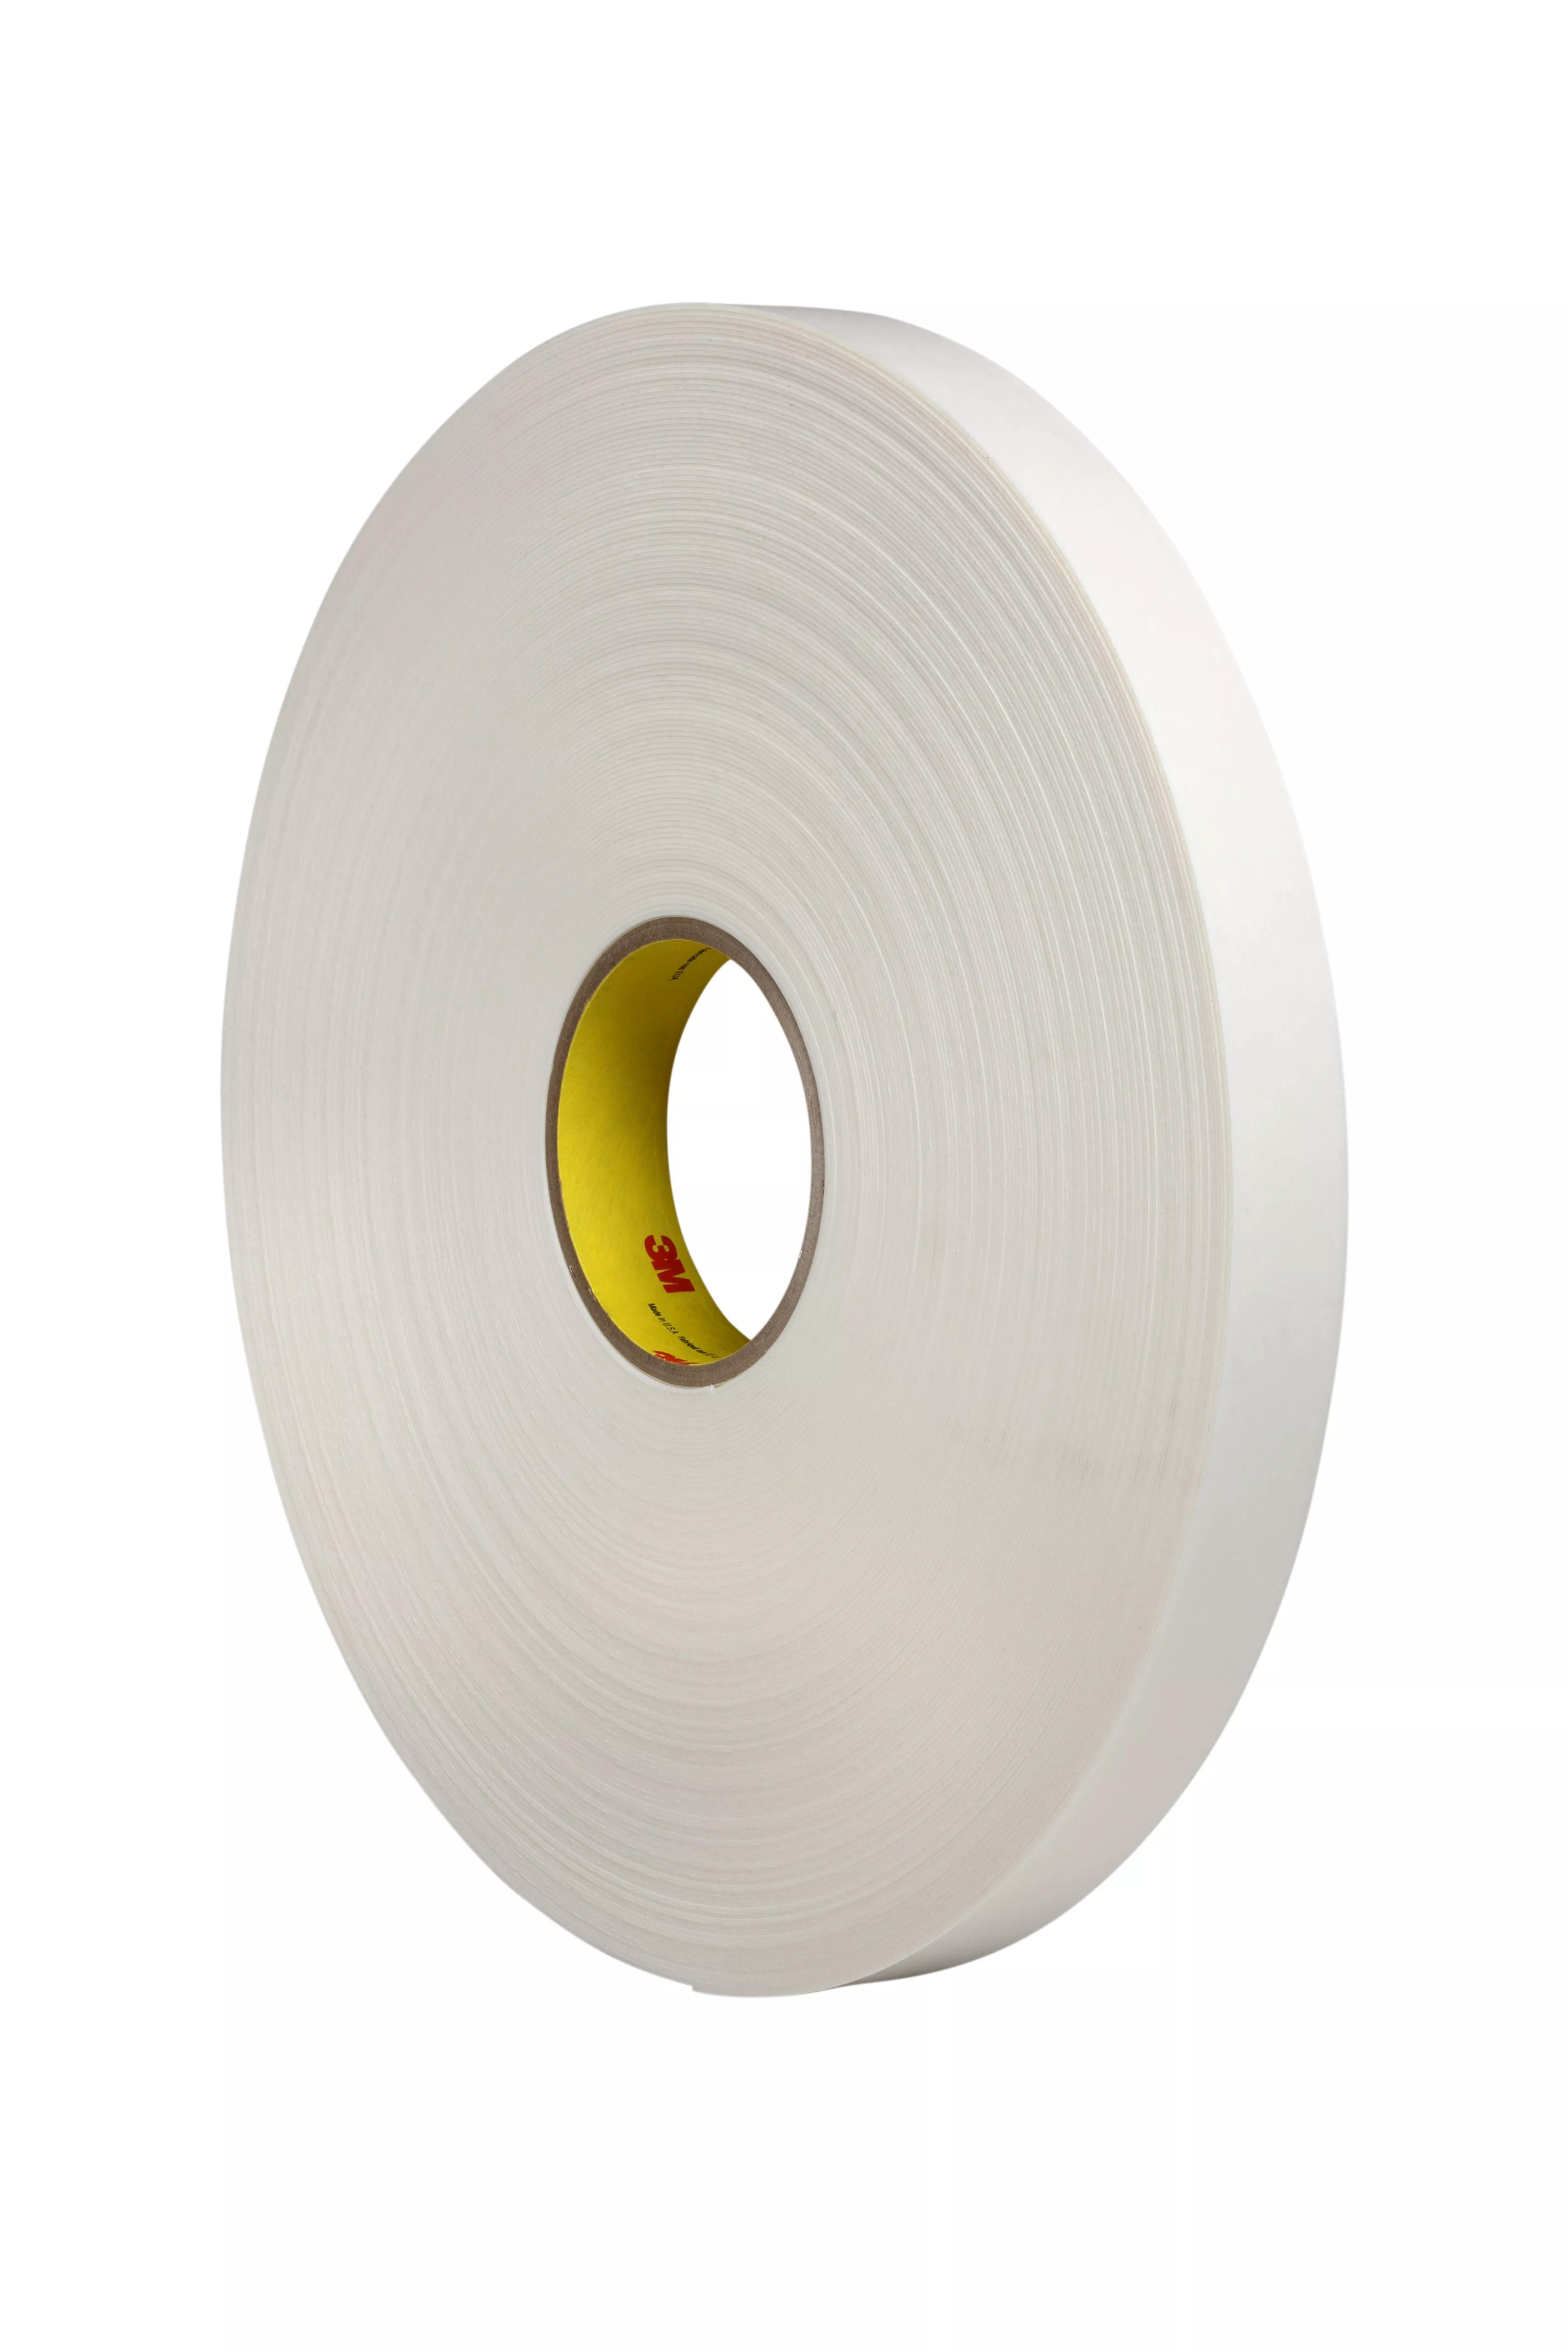 3M™ Double Coated Polyethylene Foam Tape 4462W, White, 54 in x 72 yd, 31
mil, 1 roll per case